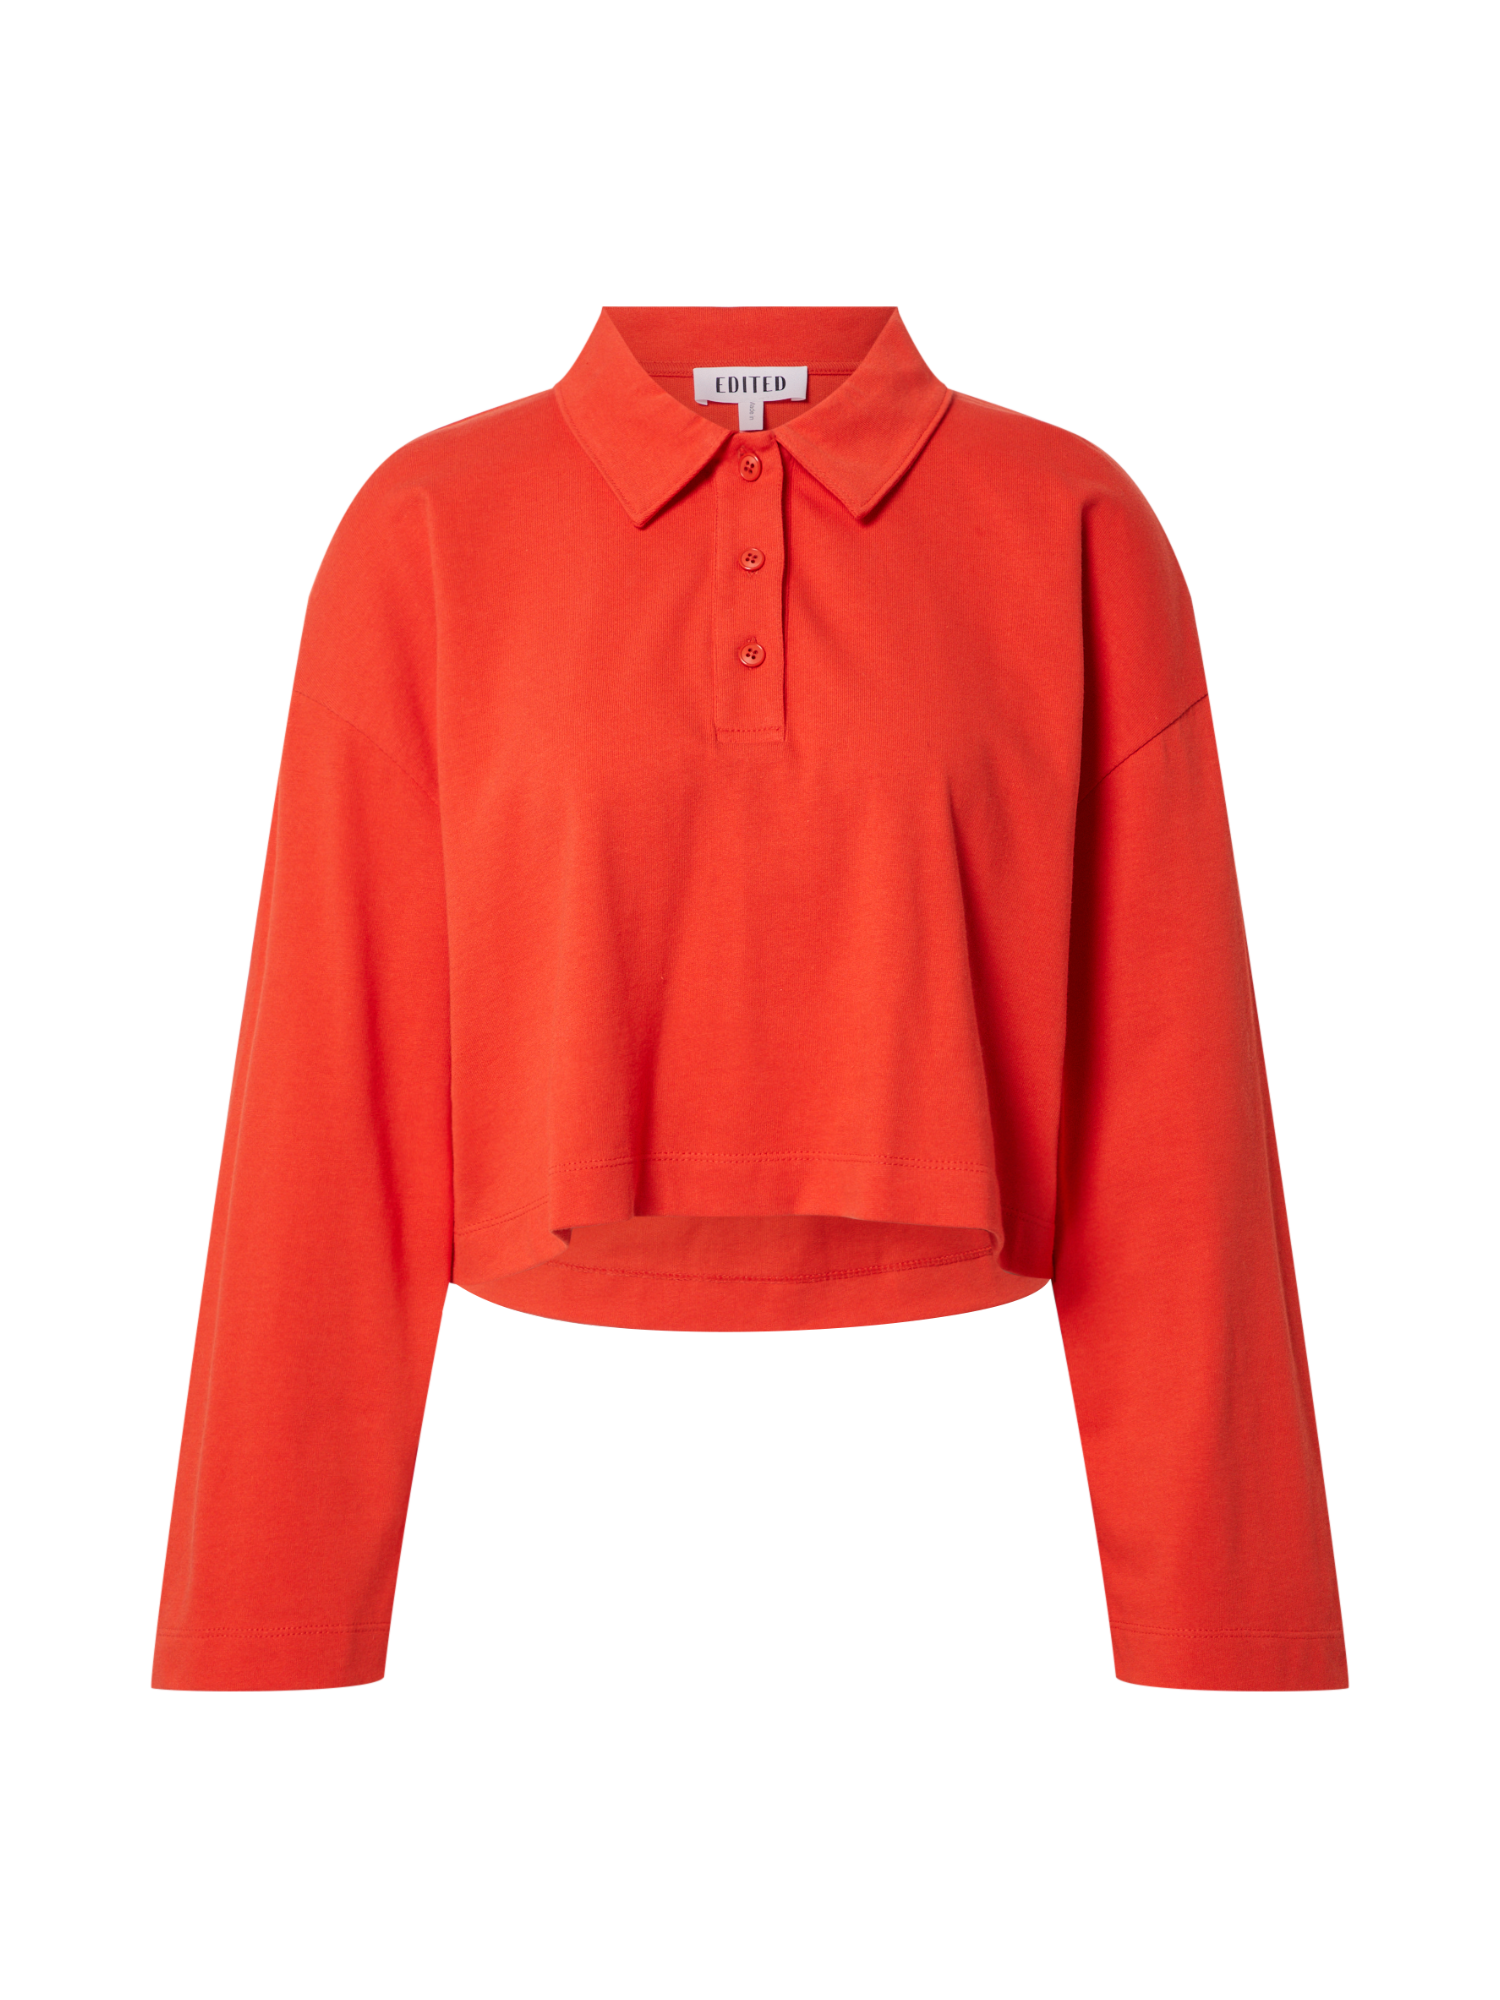 Odzież E6EpJ EDITED Koszulka Kada w kolorze Pomarańczowym 